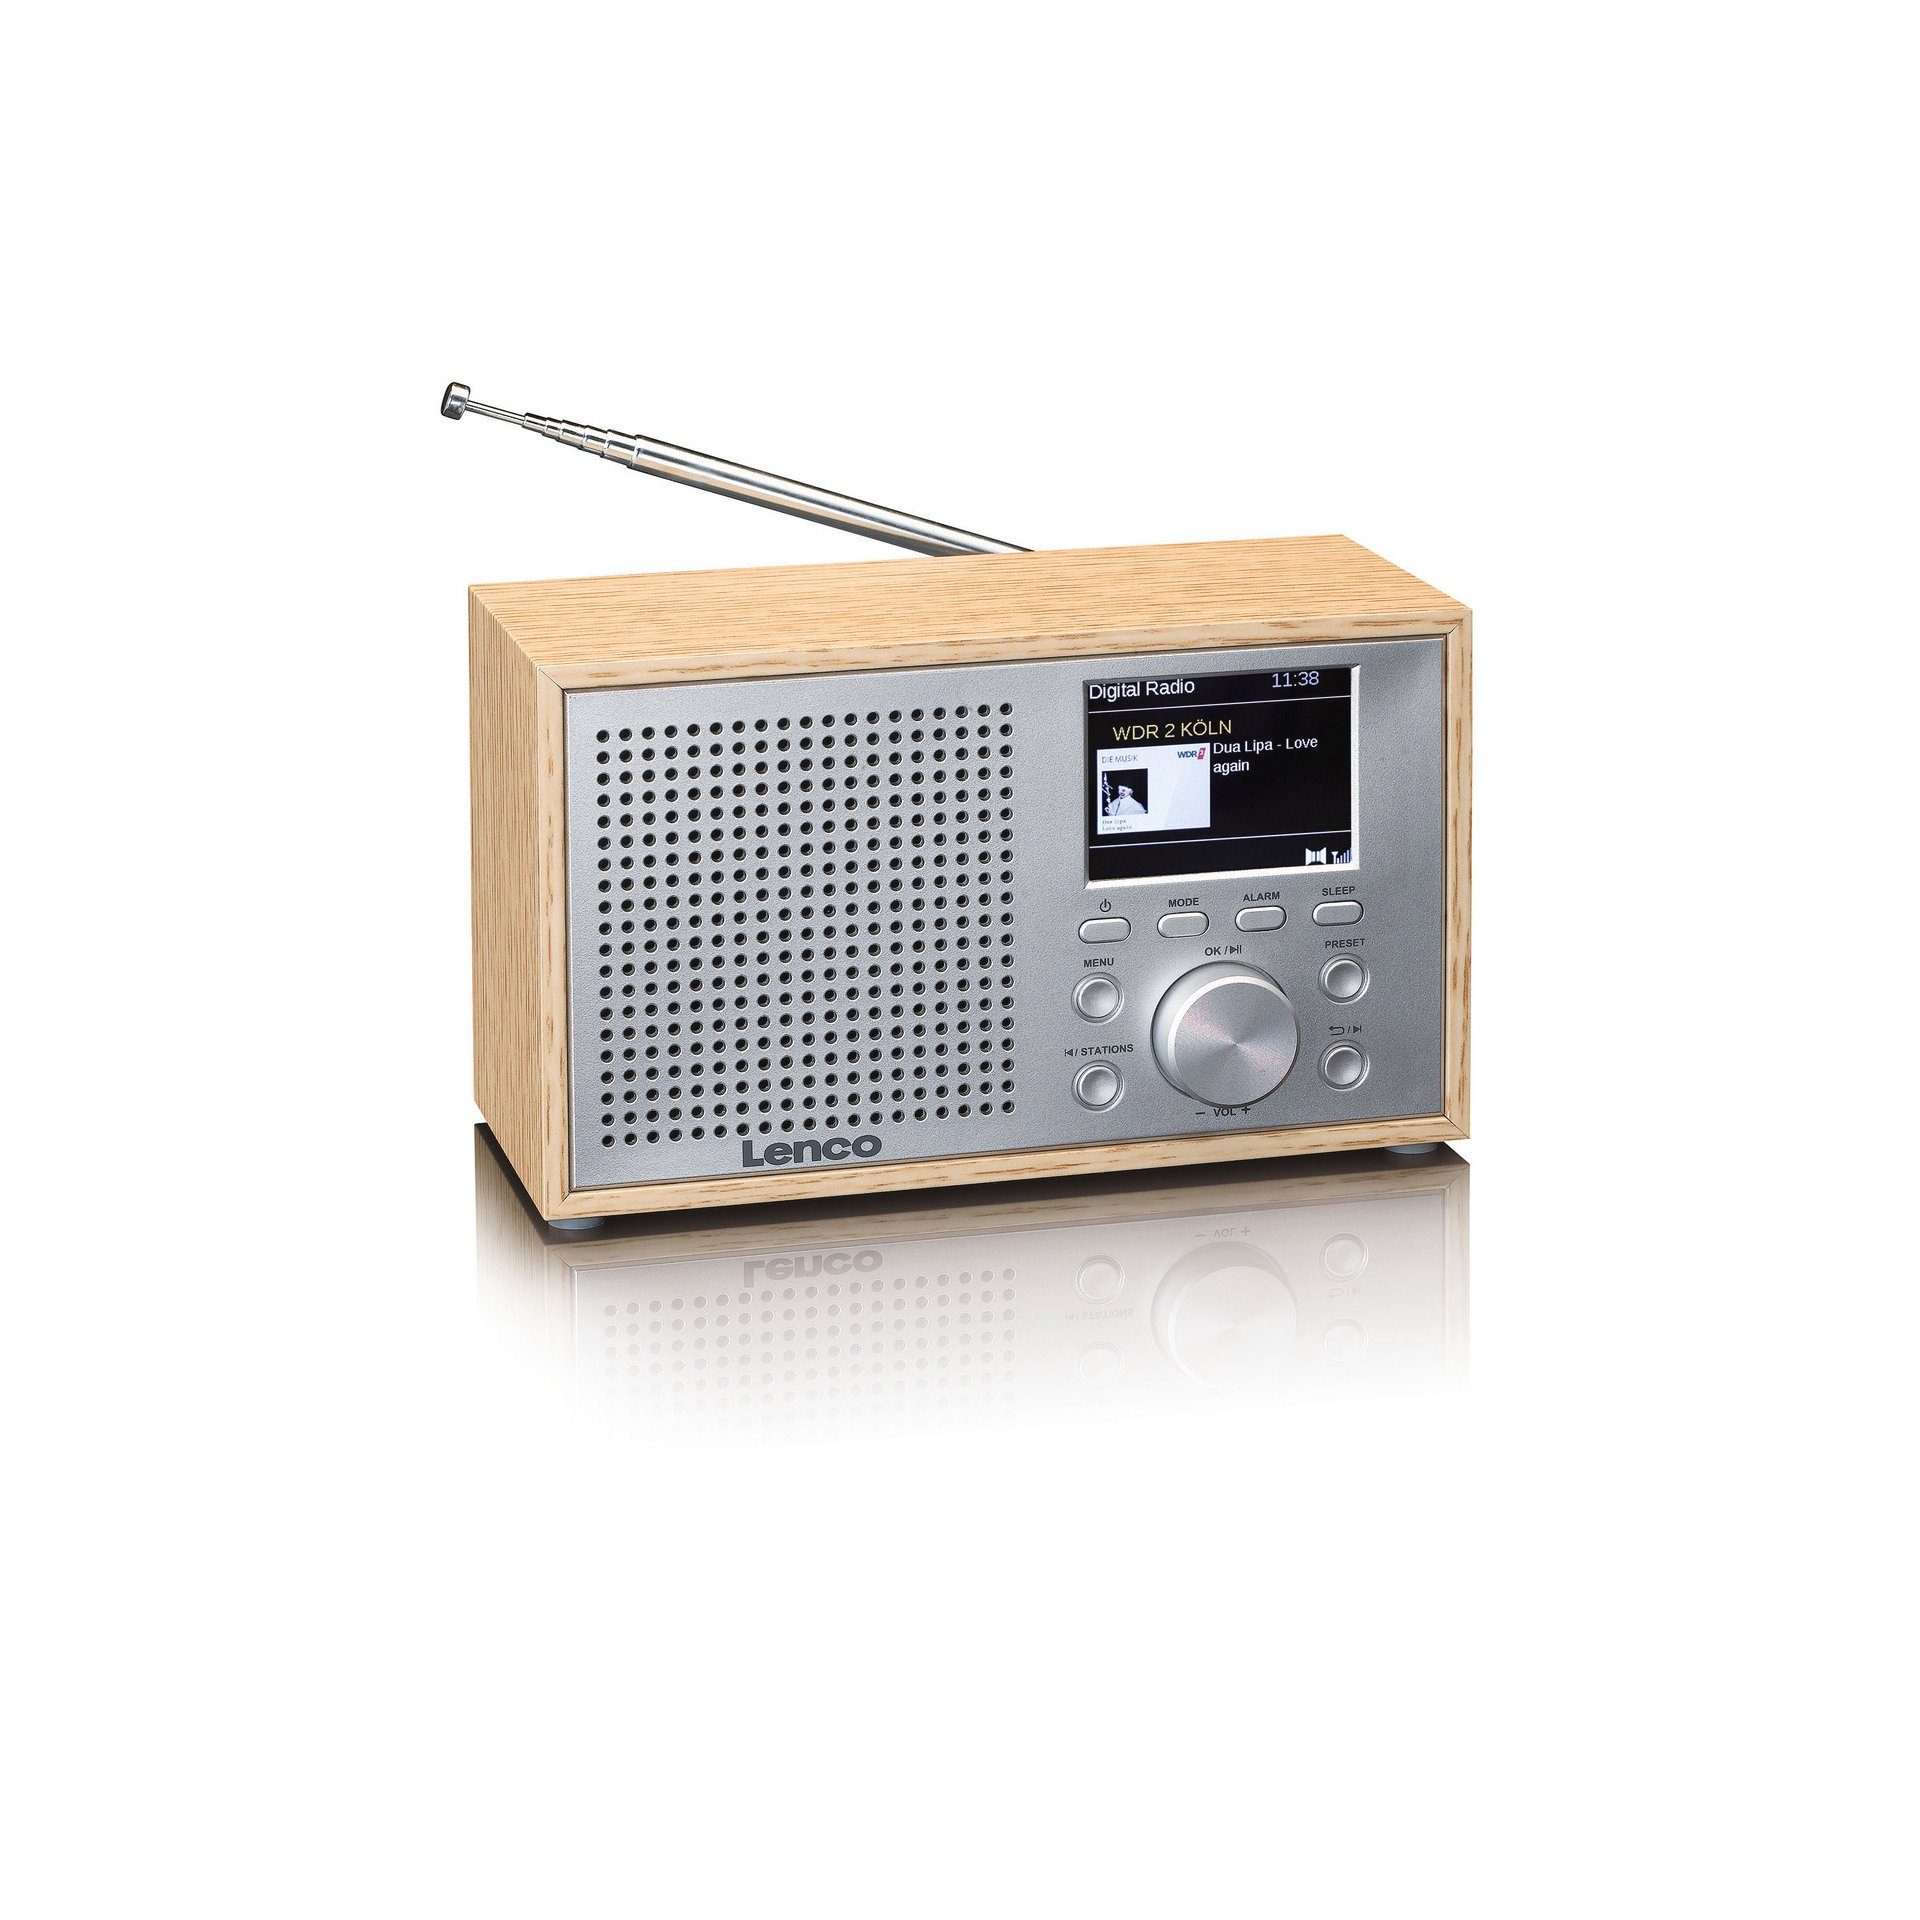 (Digitalradio 3 DAR-017 Radio (DAB), Lenco W) mit Hellbraun;Silber (DAB) Bluetooth Digitalradio DAB+/FM